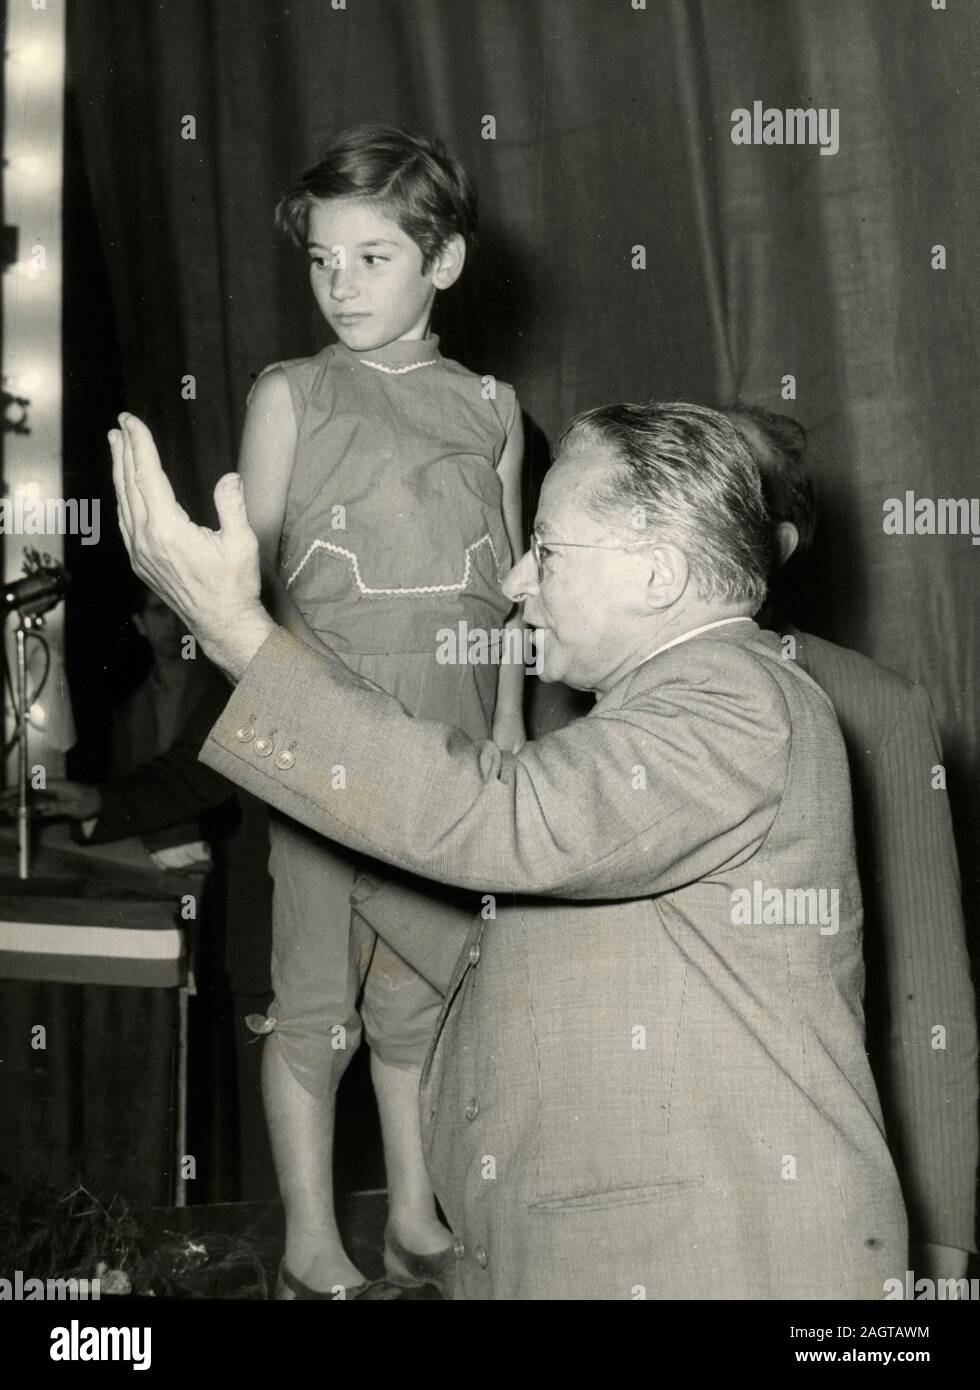 Italienischen Politikers Palmiro Togliatti mit einem Kind an einem Fall, Italien 1960 Stockfoto